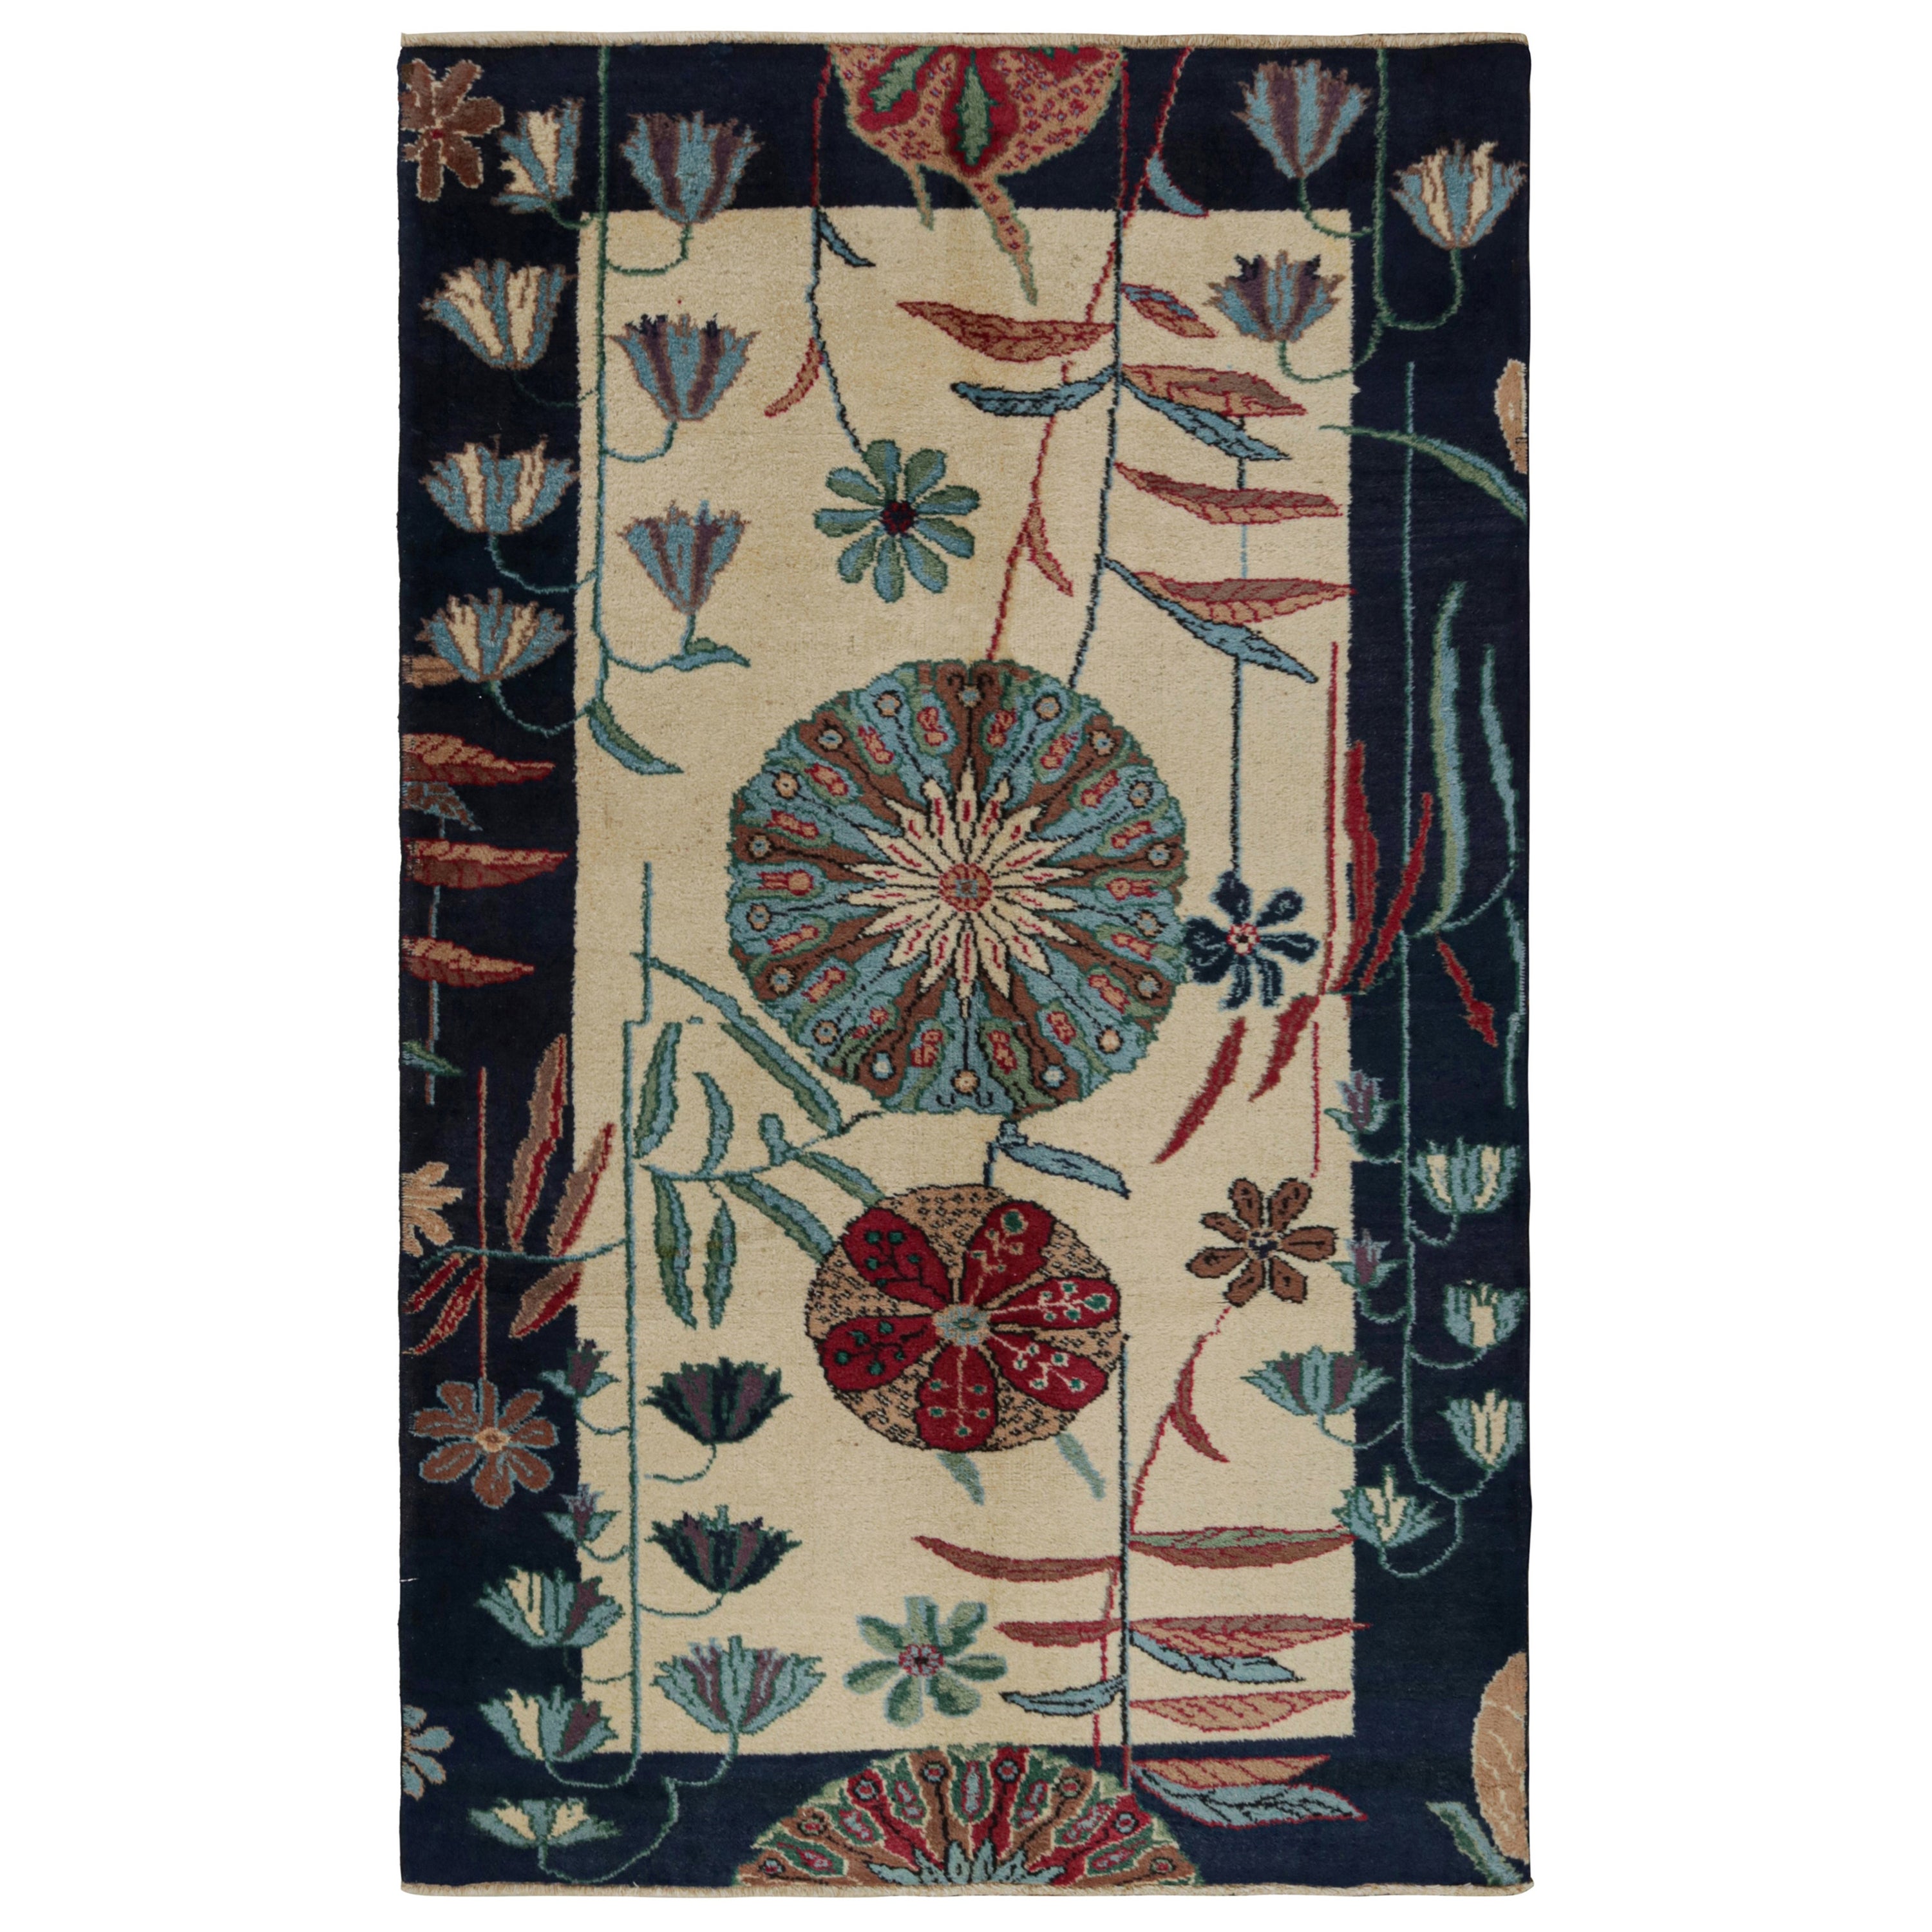 Vintage Zeki Müren Art Deco Rug, with Floral Patterns, from Rug & Kilim For Sale